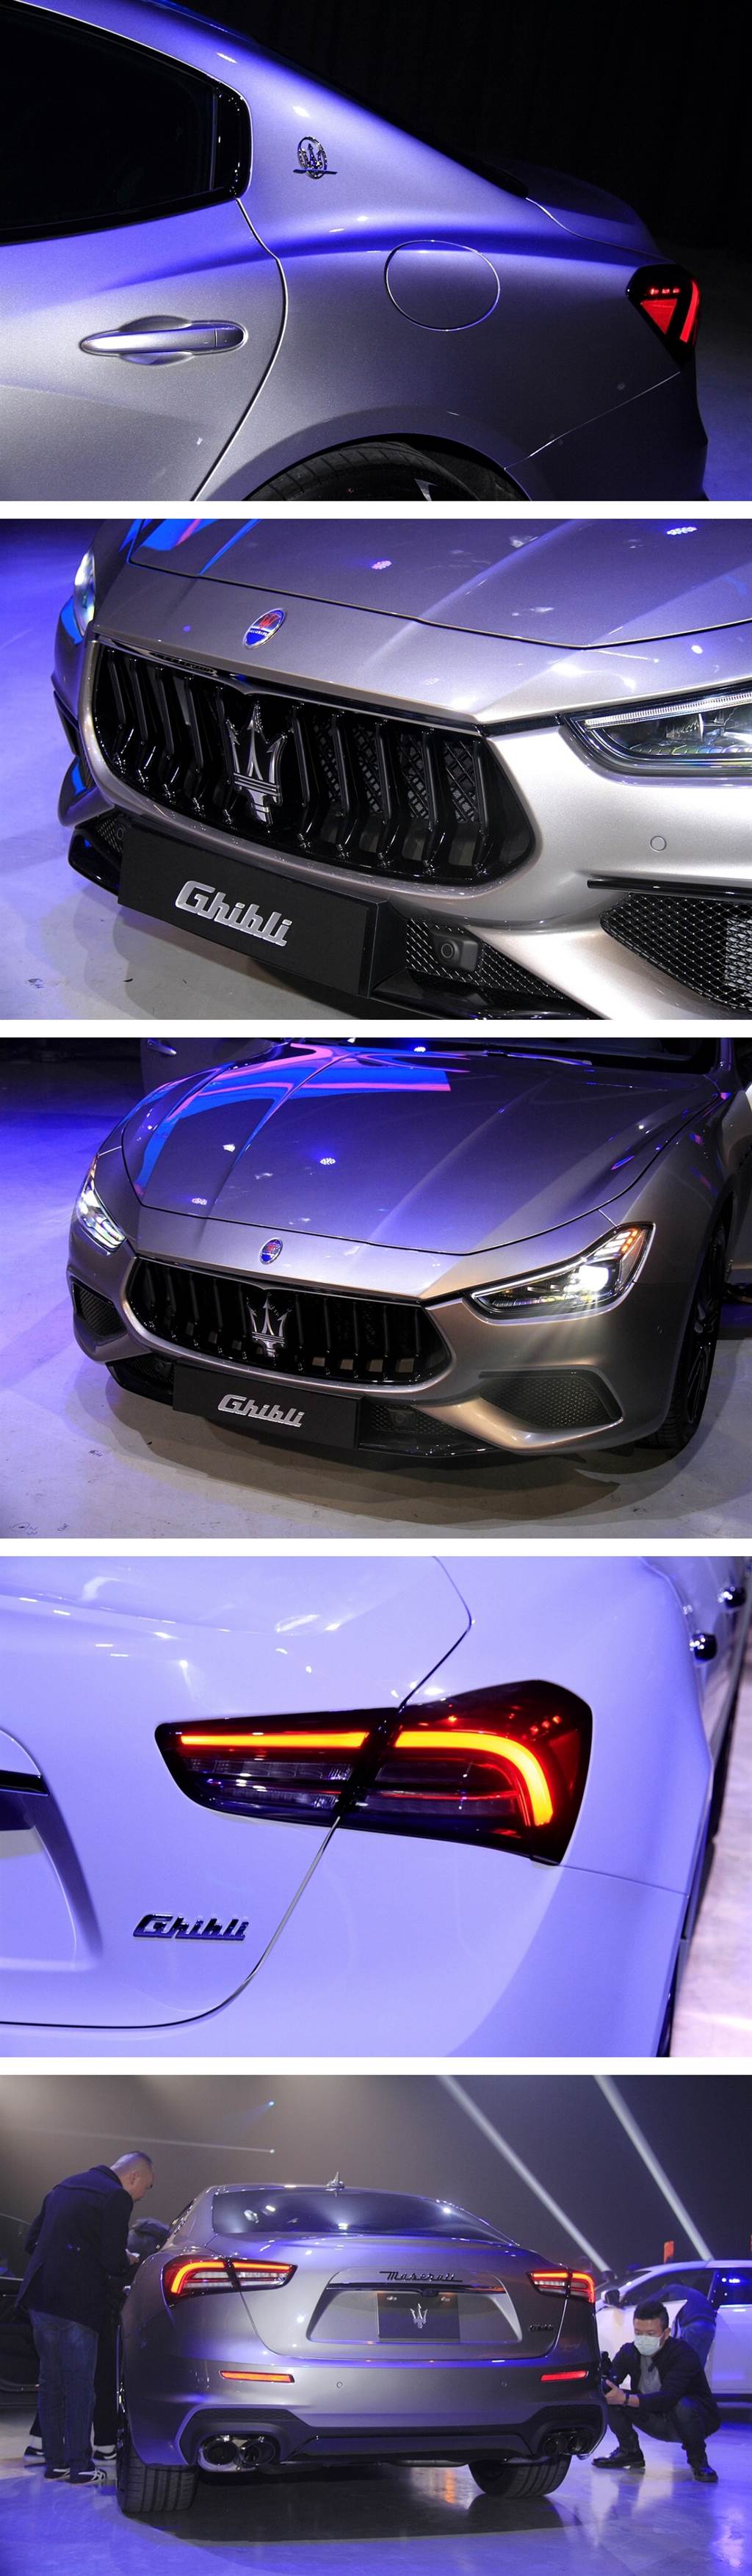 四缸帶電極補力！Maserati Ghibli MHEV 358萬起，在台上市